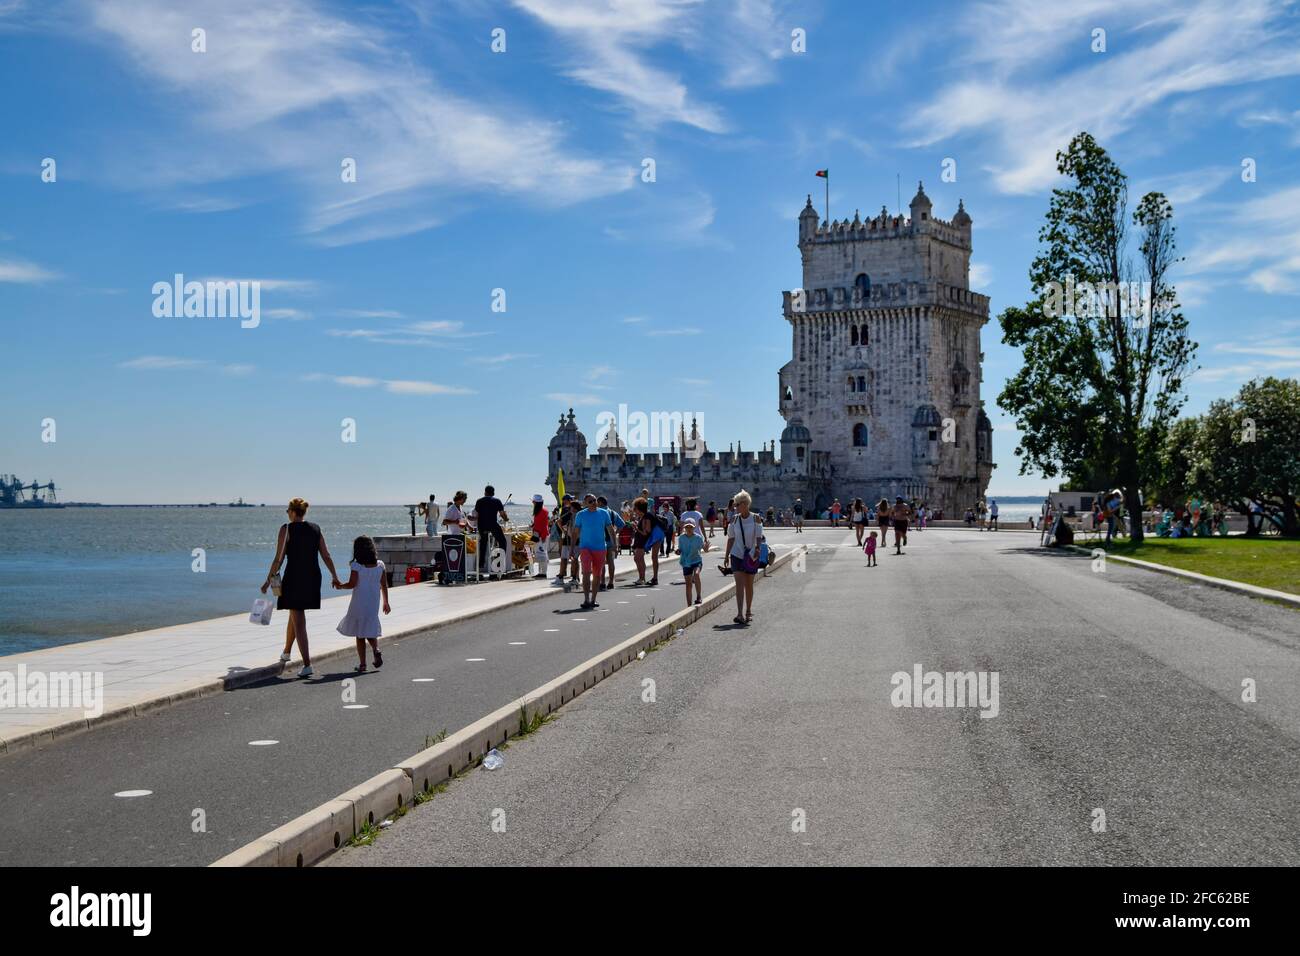 Camminando a Lisbona alla torre Belem di Saint Vincent, torre de Belém a Lisboa Portogallo con i turisti a piedi sul marciapiede. Monumenti Portoghesi esploratori Foto Stock